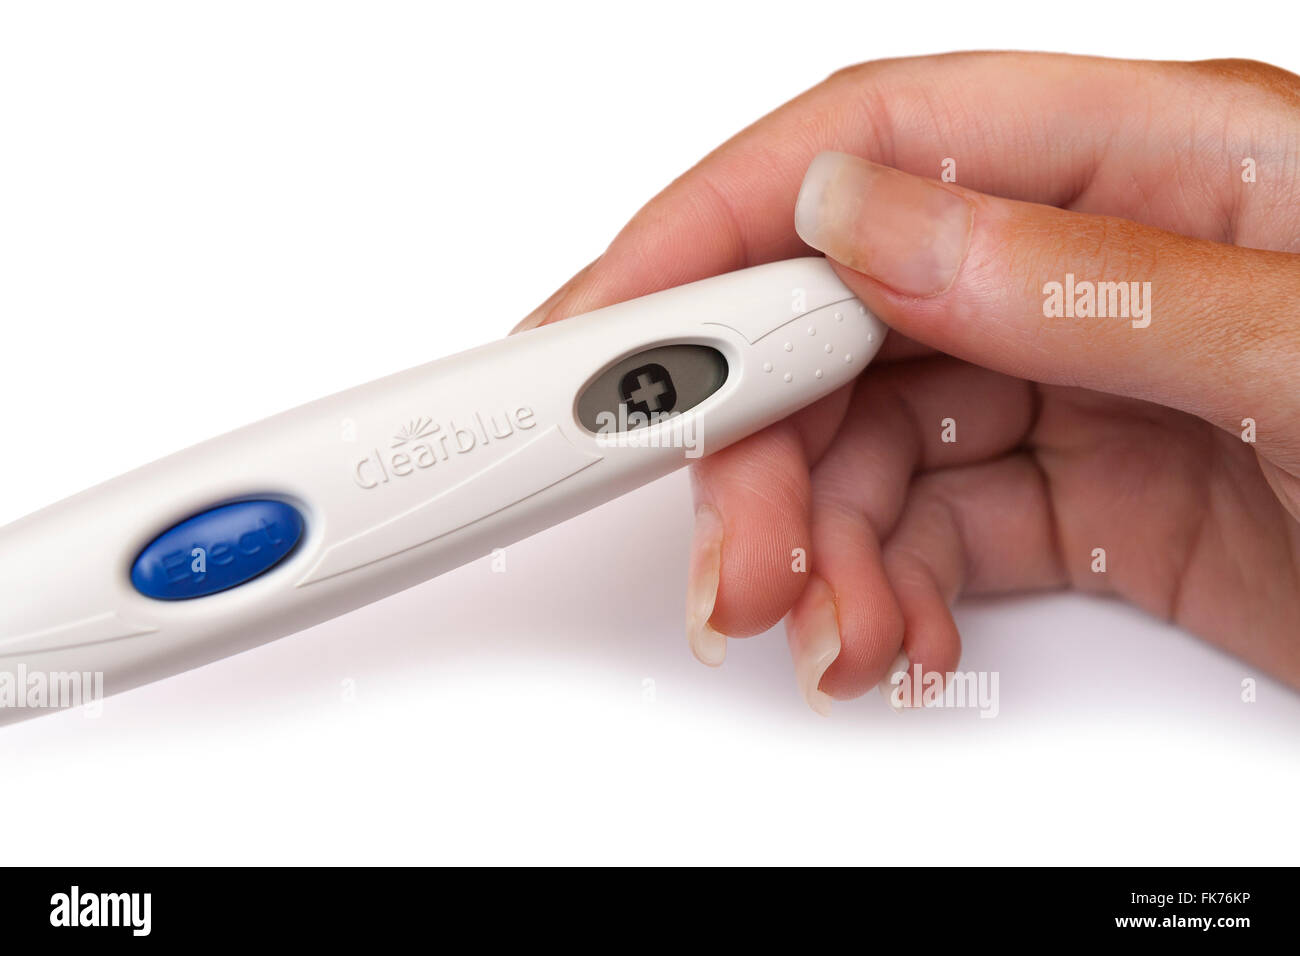 MÖLNDAL, Suède - 28 février 2007 : un test de grossesse Clearblue positif  dans ses mains isolé sur fond blanc Photo Stock - Alamy